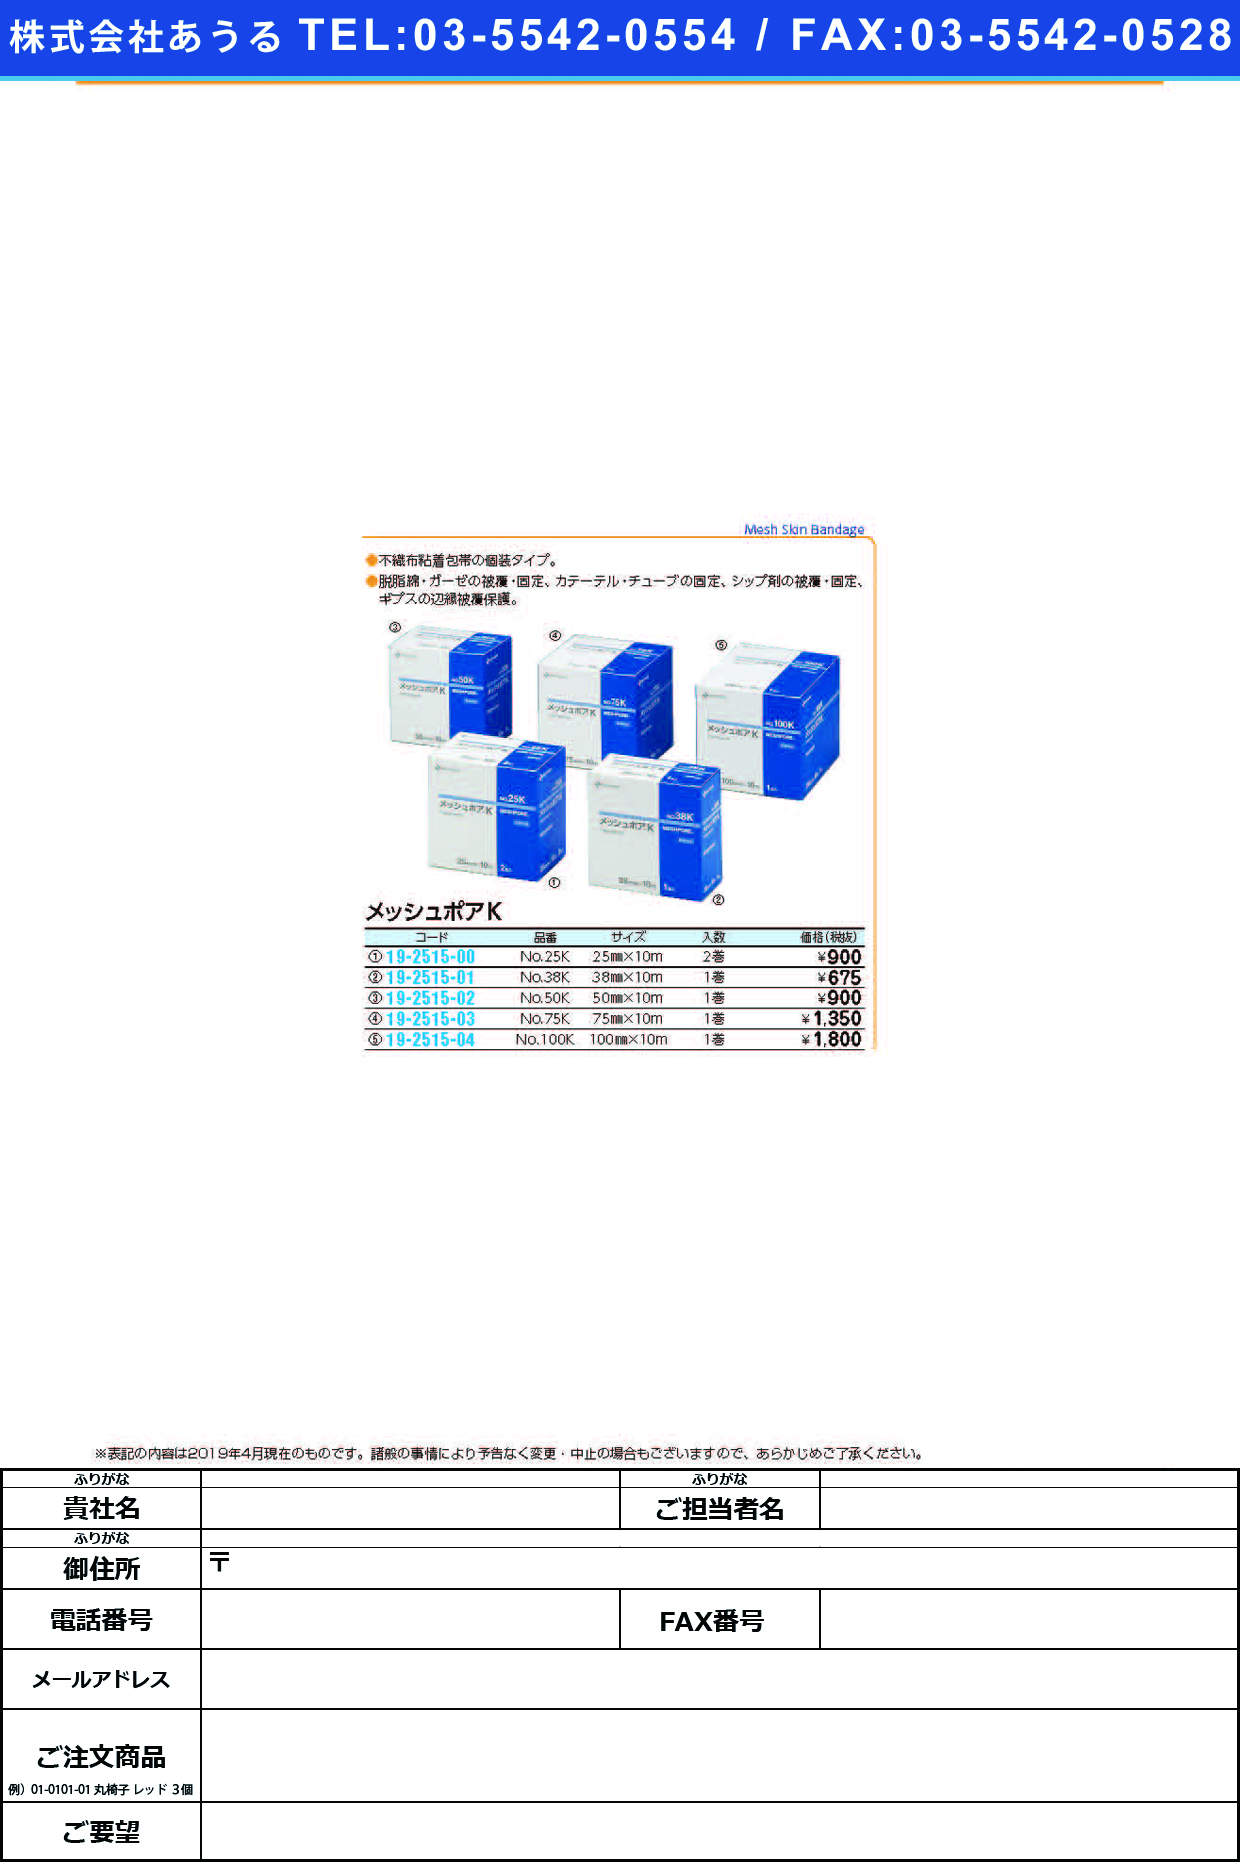 (19-2515-00)メッシュポアＫ NO.25K(25MMX10M)2ｶﾝ ﾒｯｼｭﾎﾟｱK(ニチバン)【1個単位】【2019年カタログ商品】